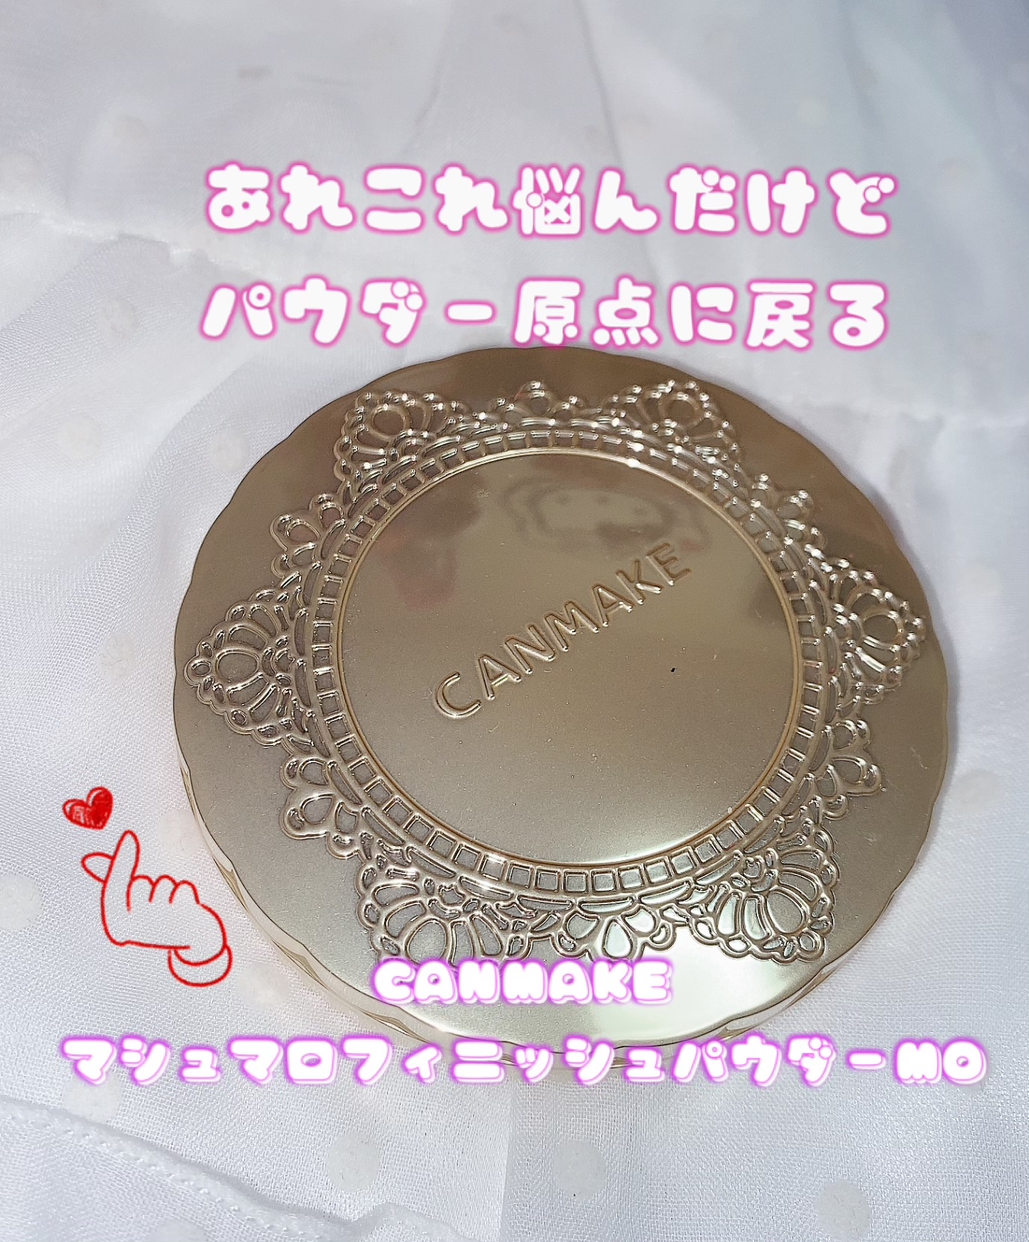 CANMAKE(キャンメイク) マシュマロフィニッシュパウダーの良い点・メリットに関する珈琲豆♡さんの口コミ画像1